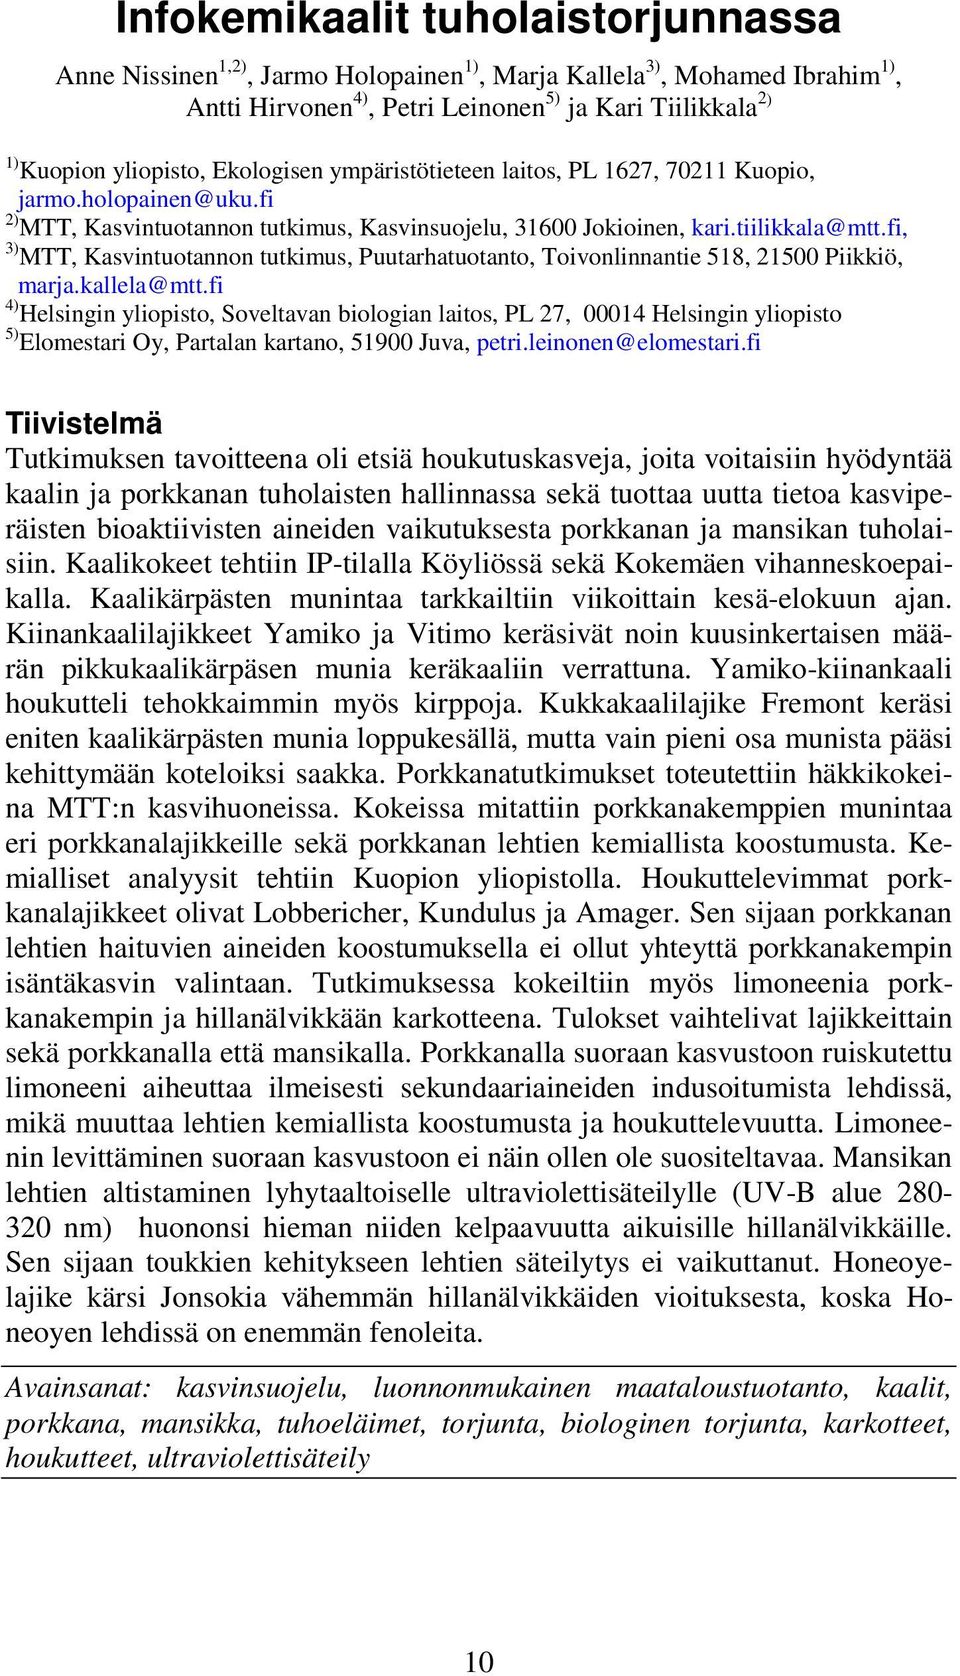 fi, 3) MTT, Kasvintuotannon tutkimus, Puutarhatuotanto, Toivonlinnantie 518, 21500 Piikkiö, marja.kallela@mtt.